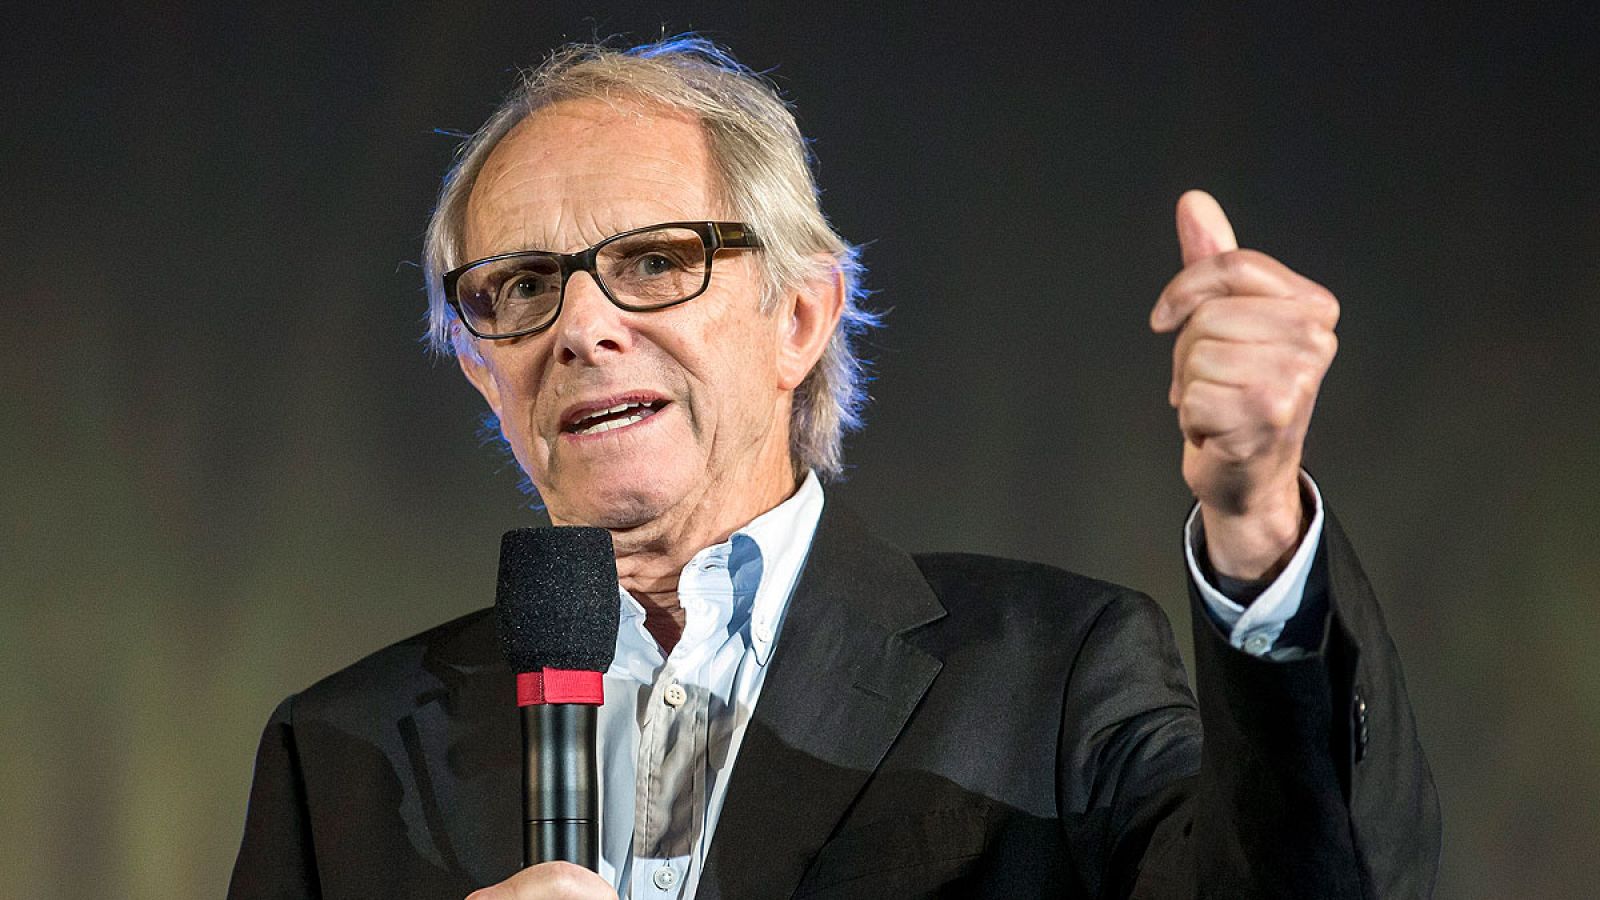 El director británico Ken Loach, durante su intervención en el Festival Internacional de Cine de Locarno (Suiza).